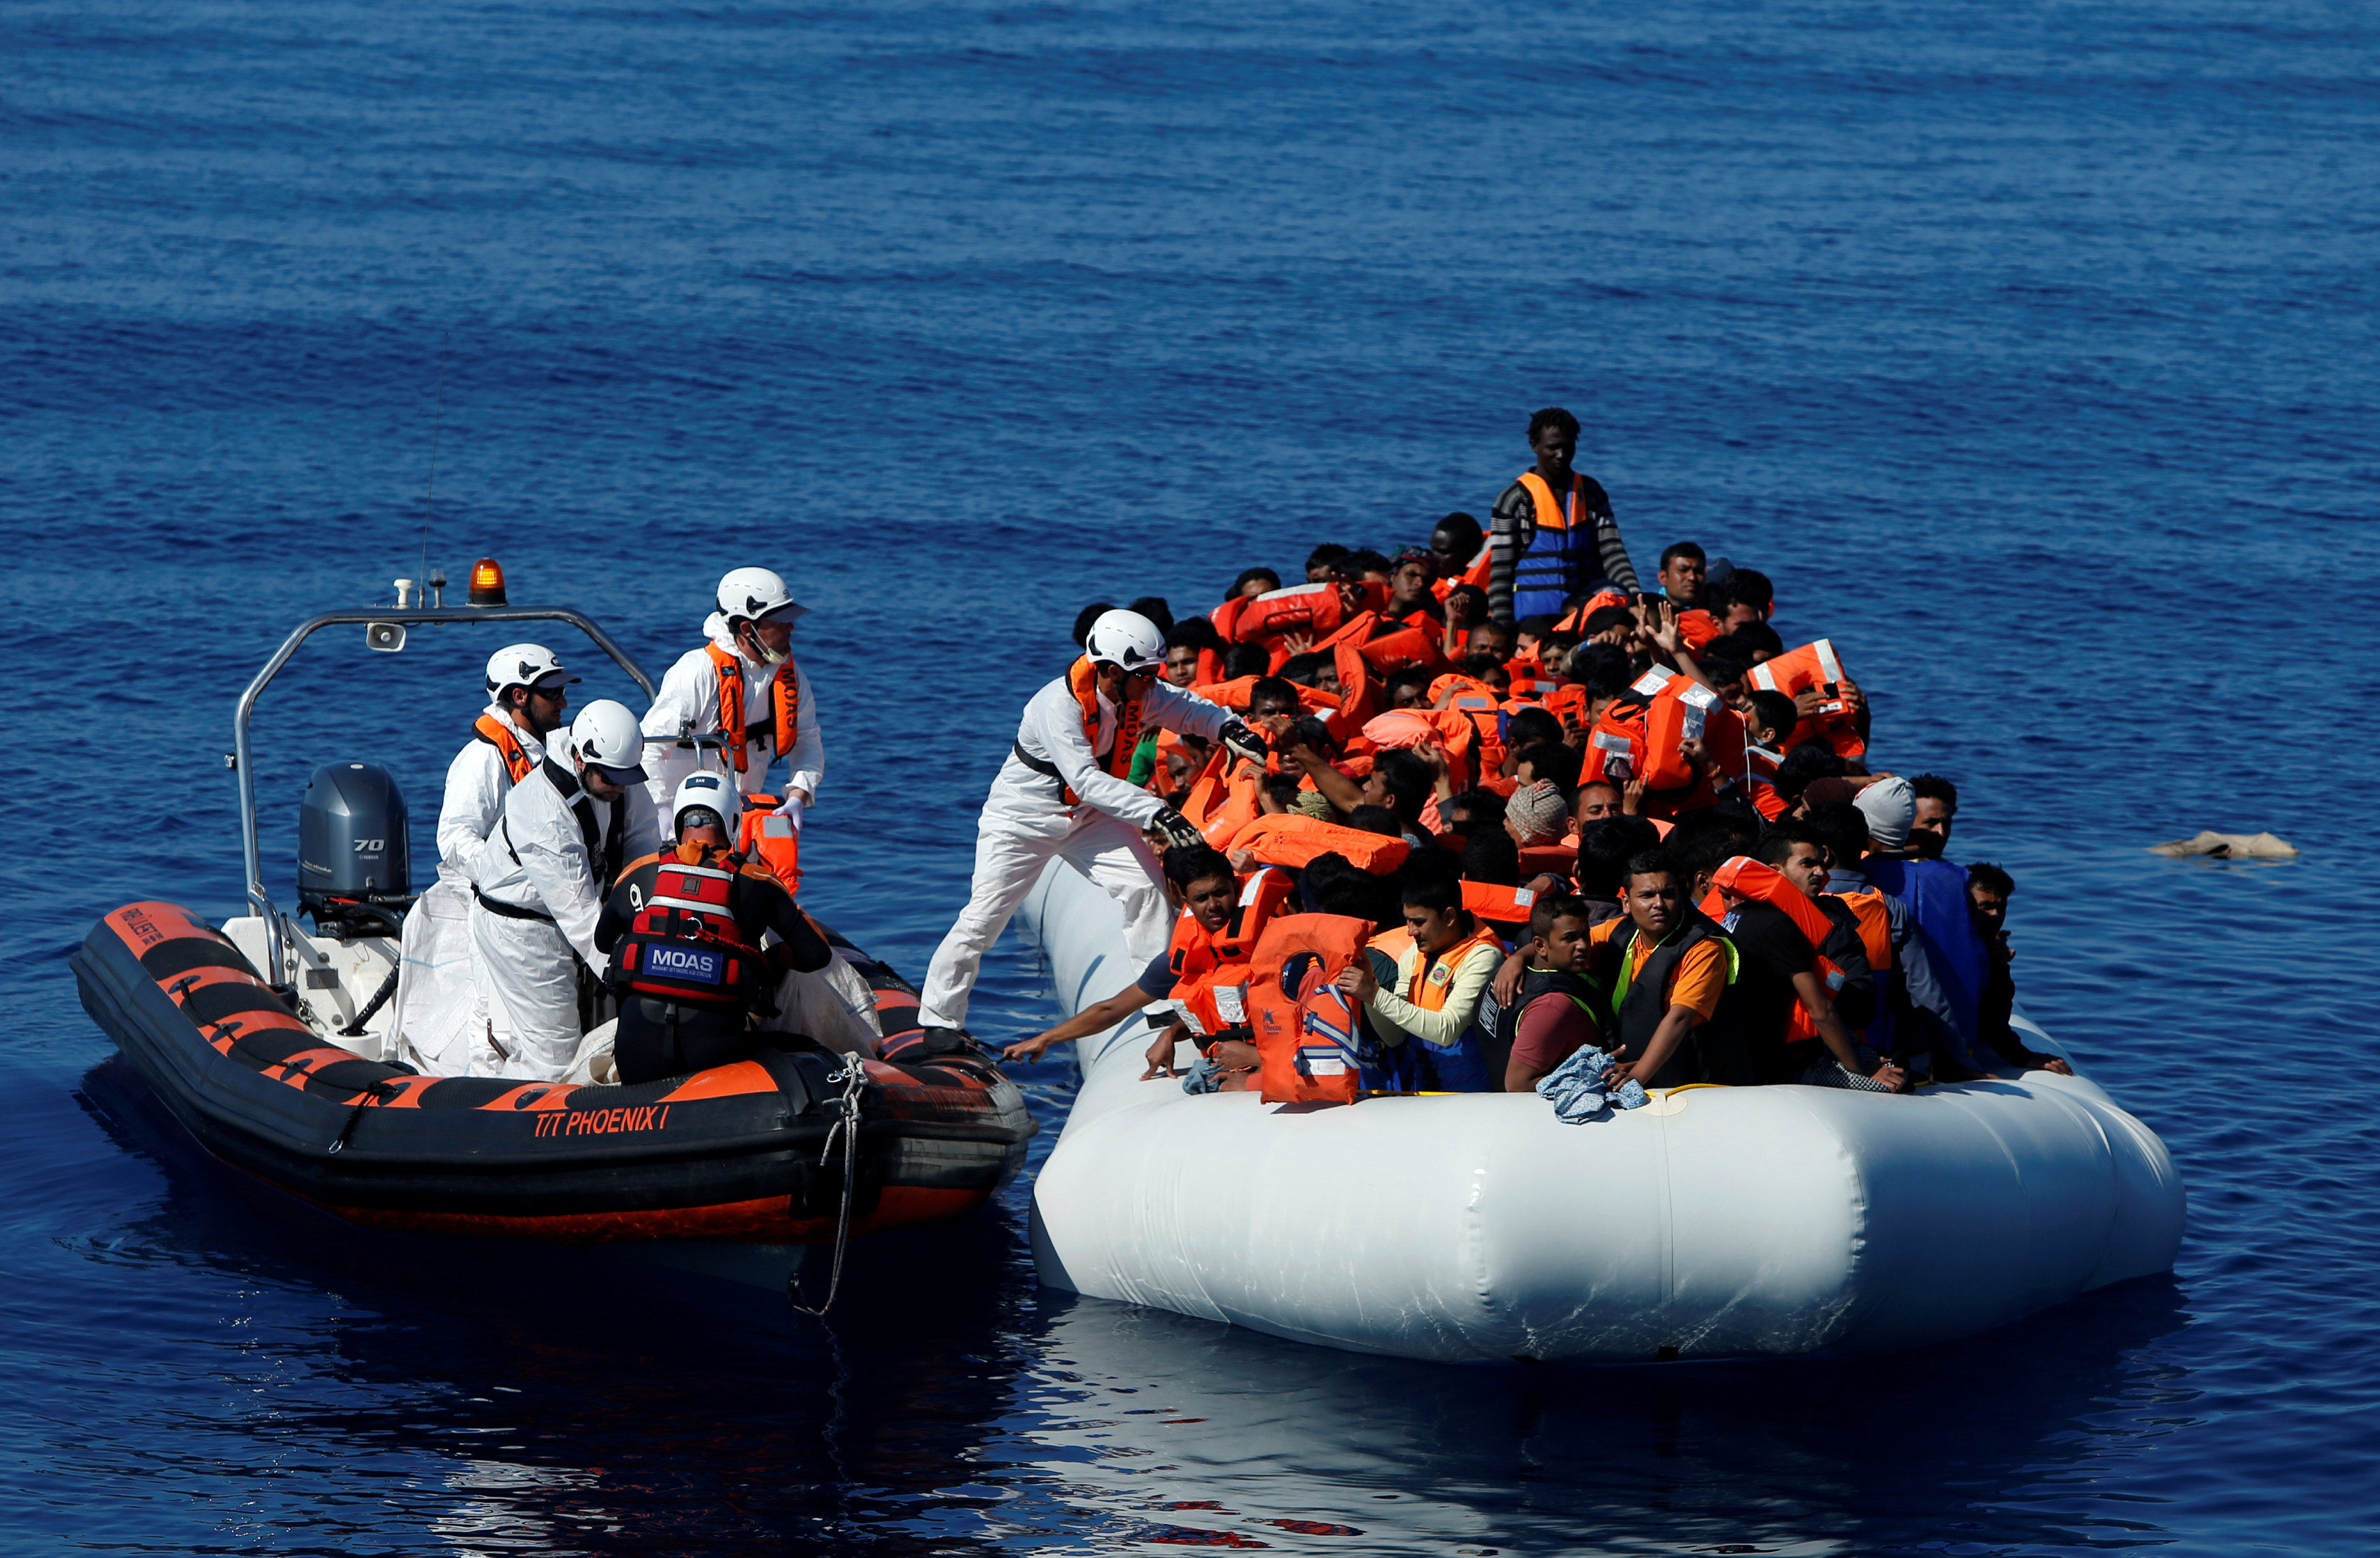 فرق الانقاذ تؤمن المهاجرون عقب انقاذهم من الغرق